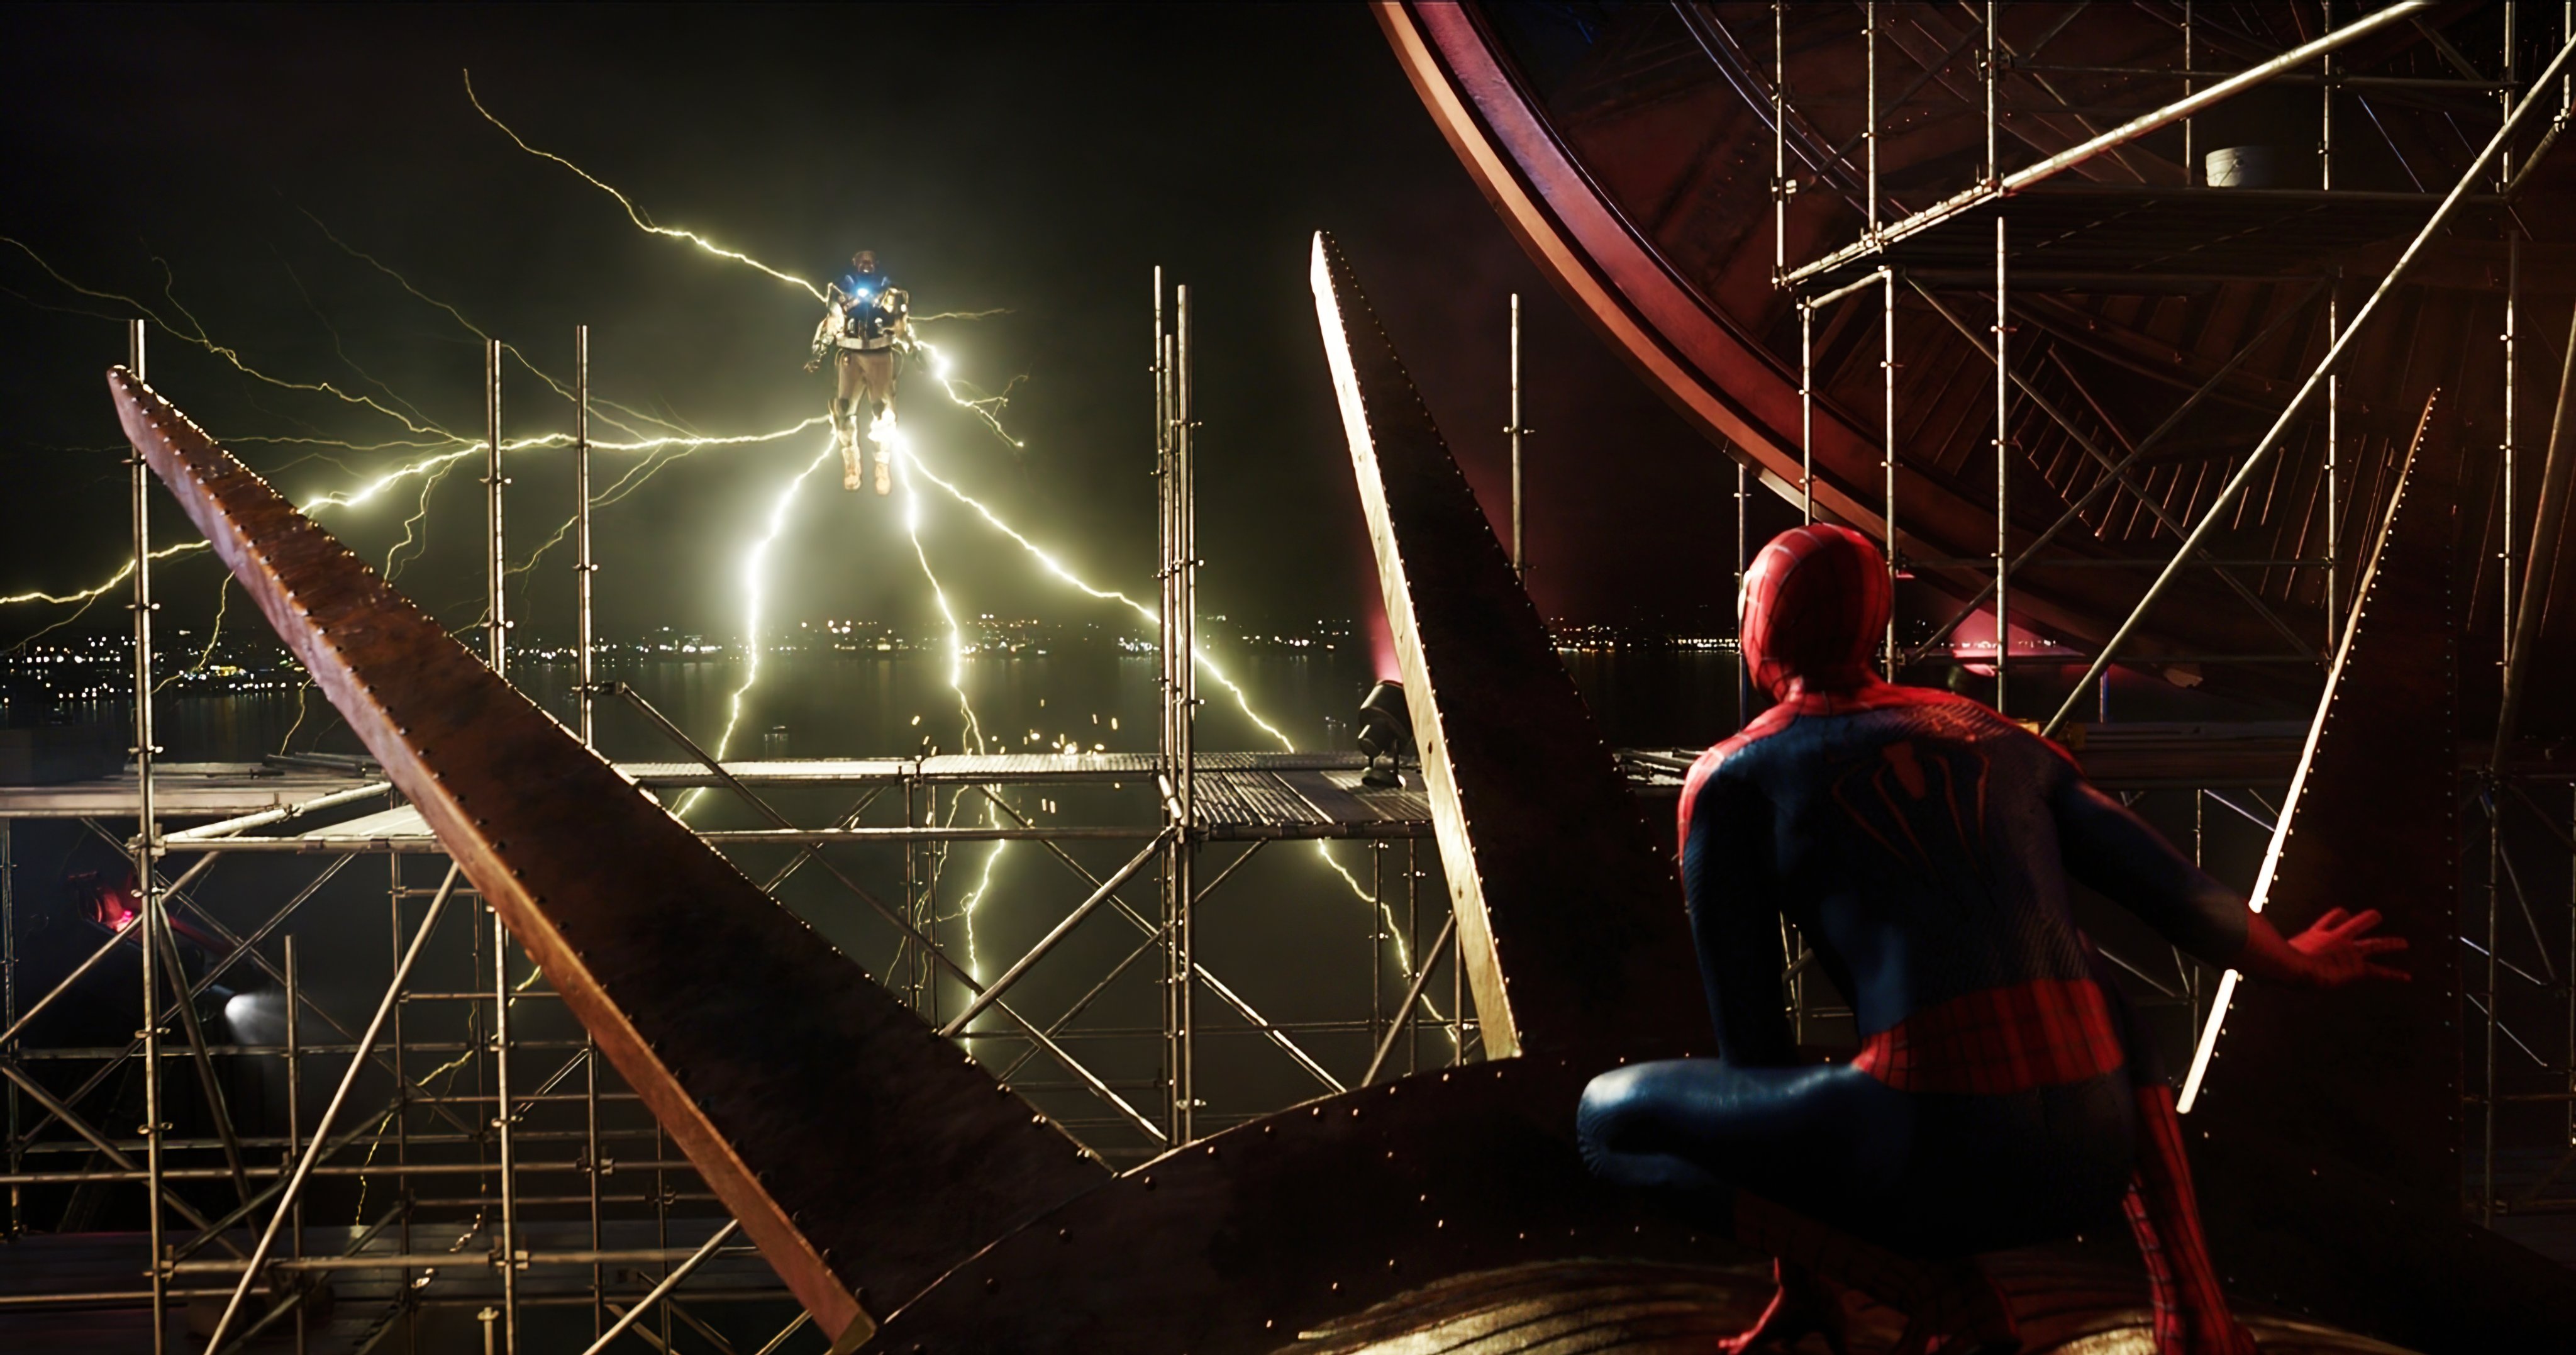 The Amazing Spider-Man vs Electro